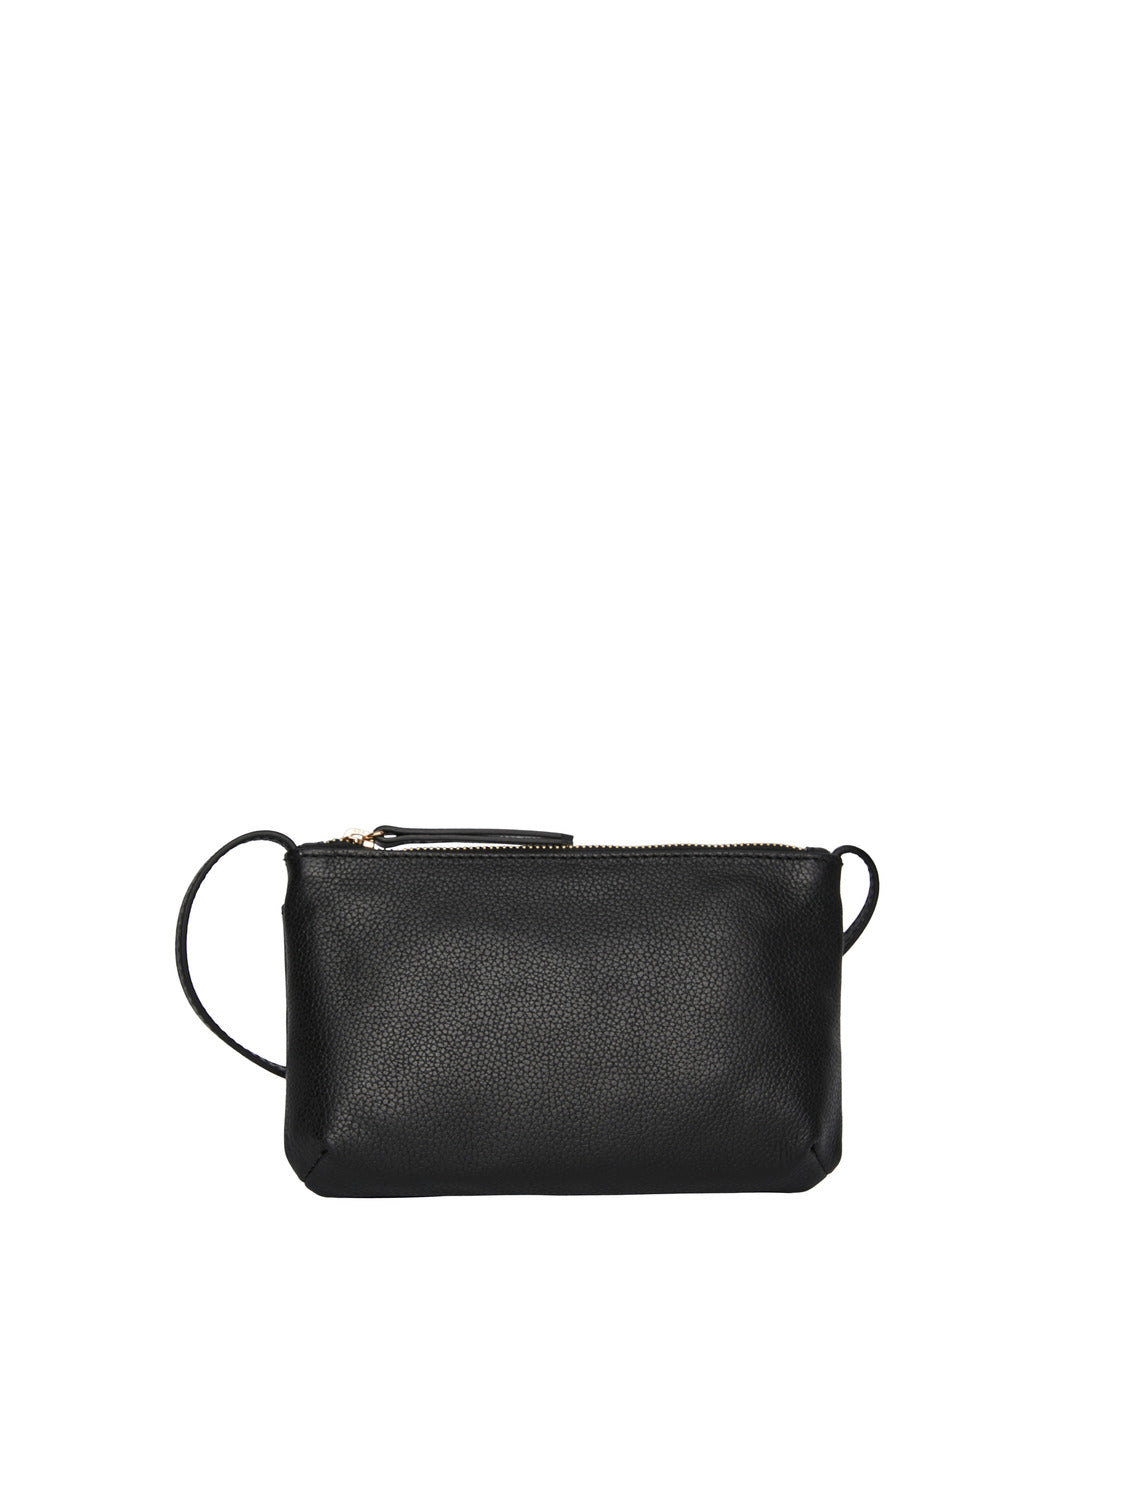 PCJILINE Handbag - Black